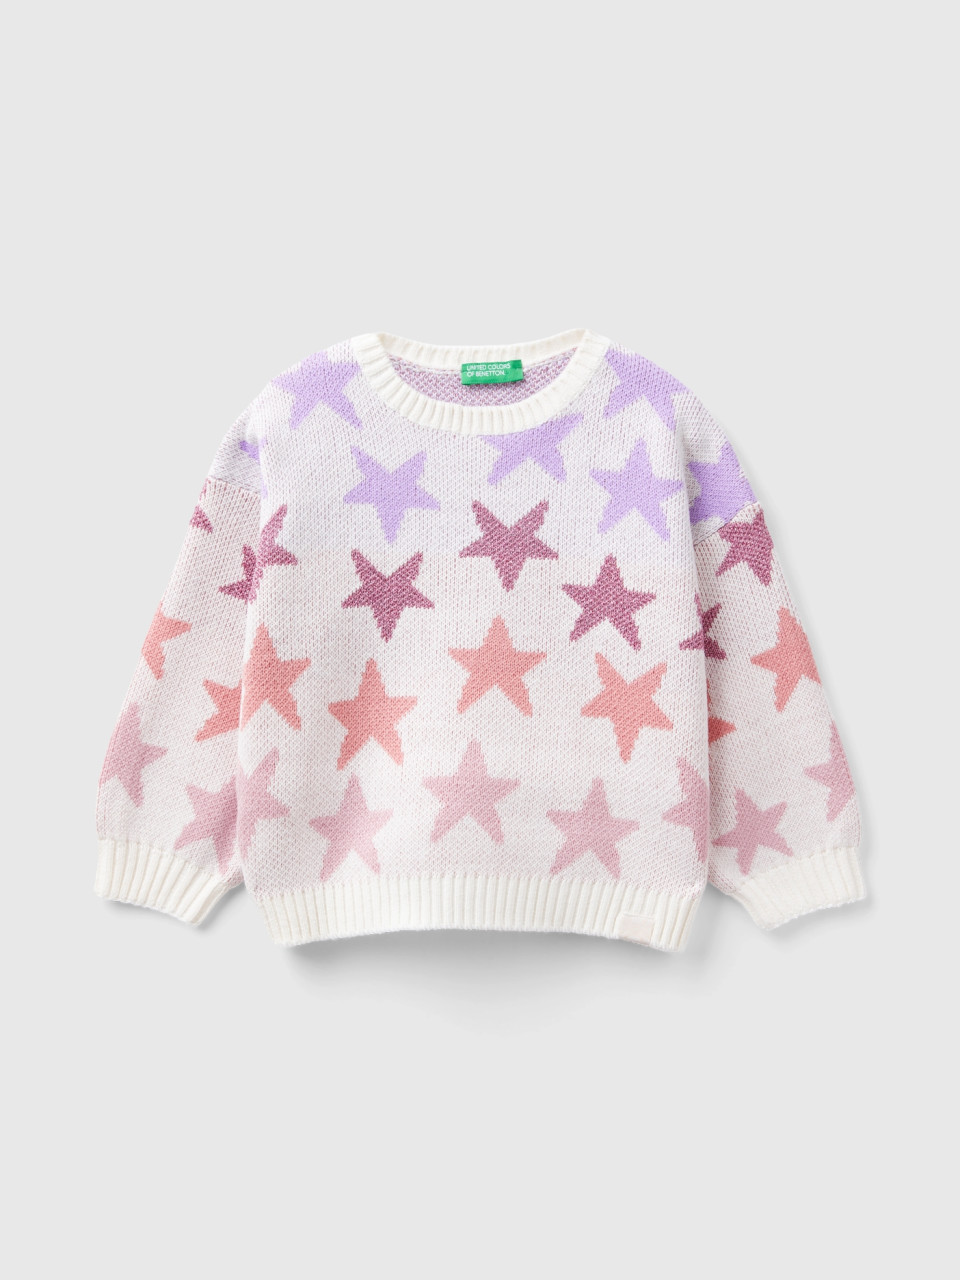 Benetton, Warm Sweater With Lurex Stars, White, Kids